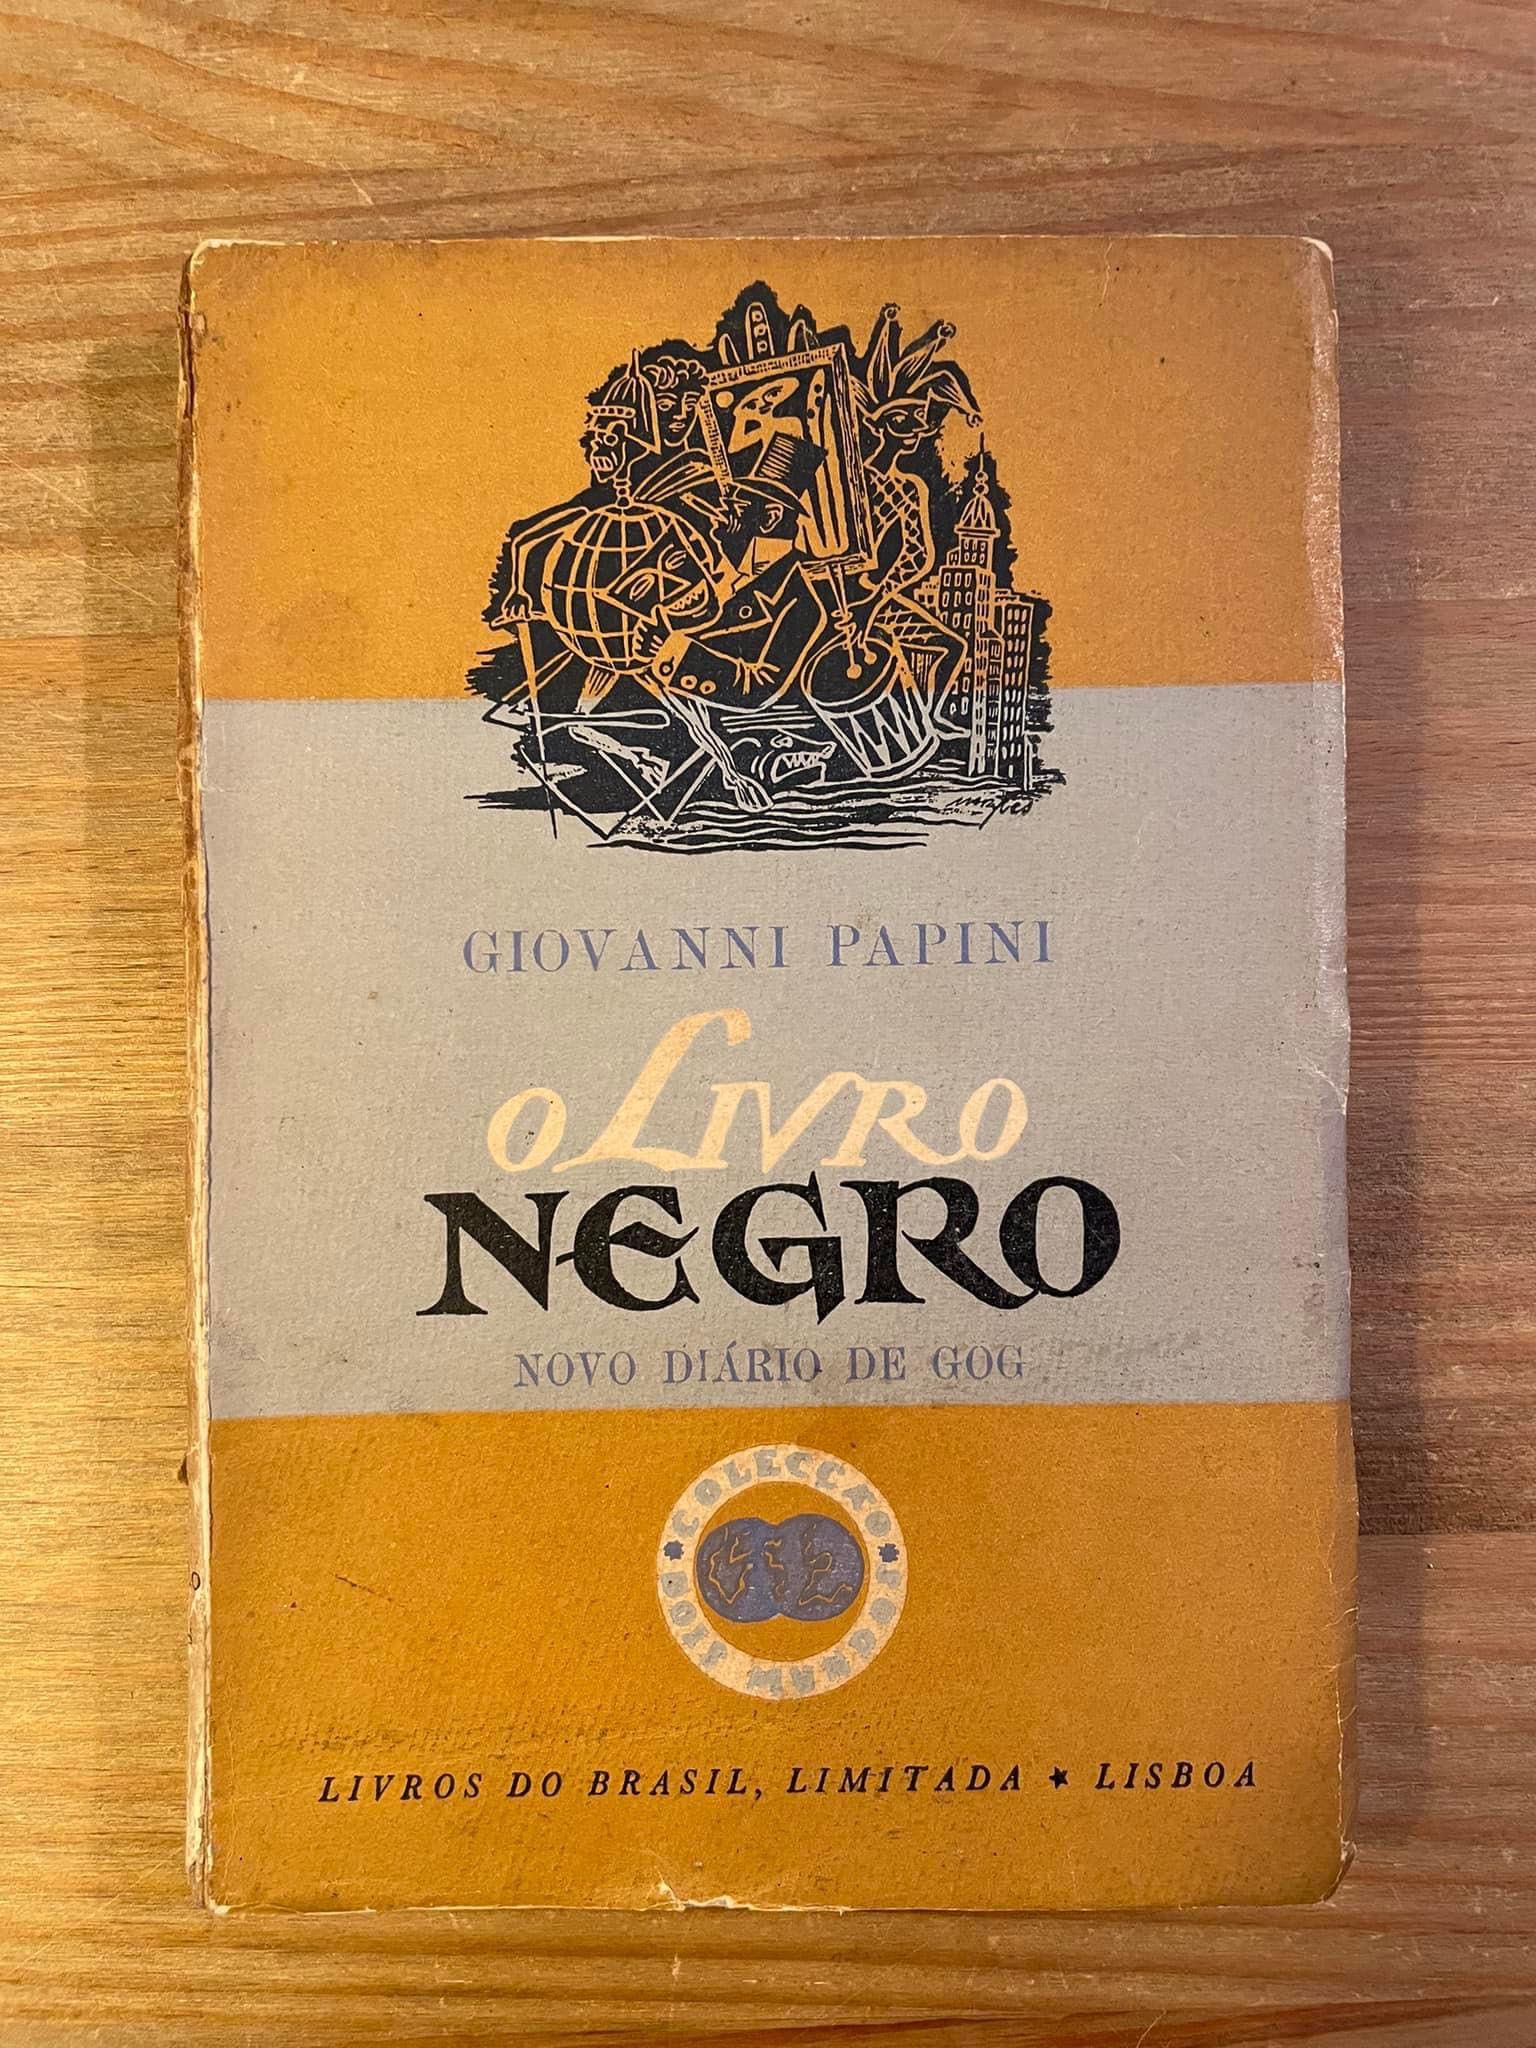 O Livro Negro - Giovanni Papini (portes grátis)